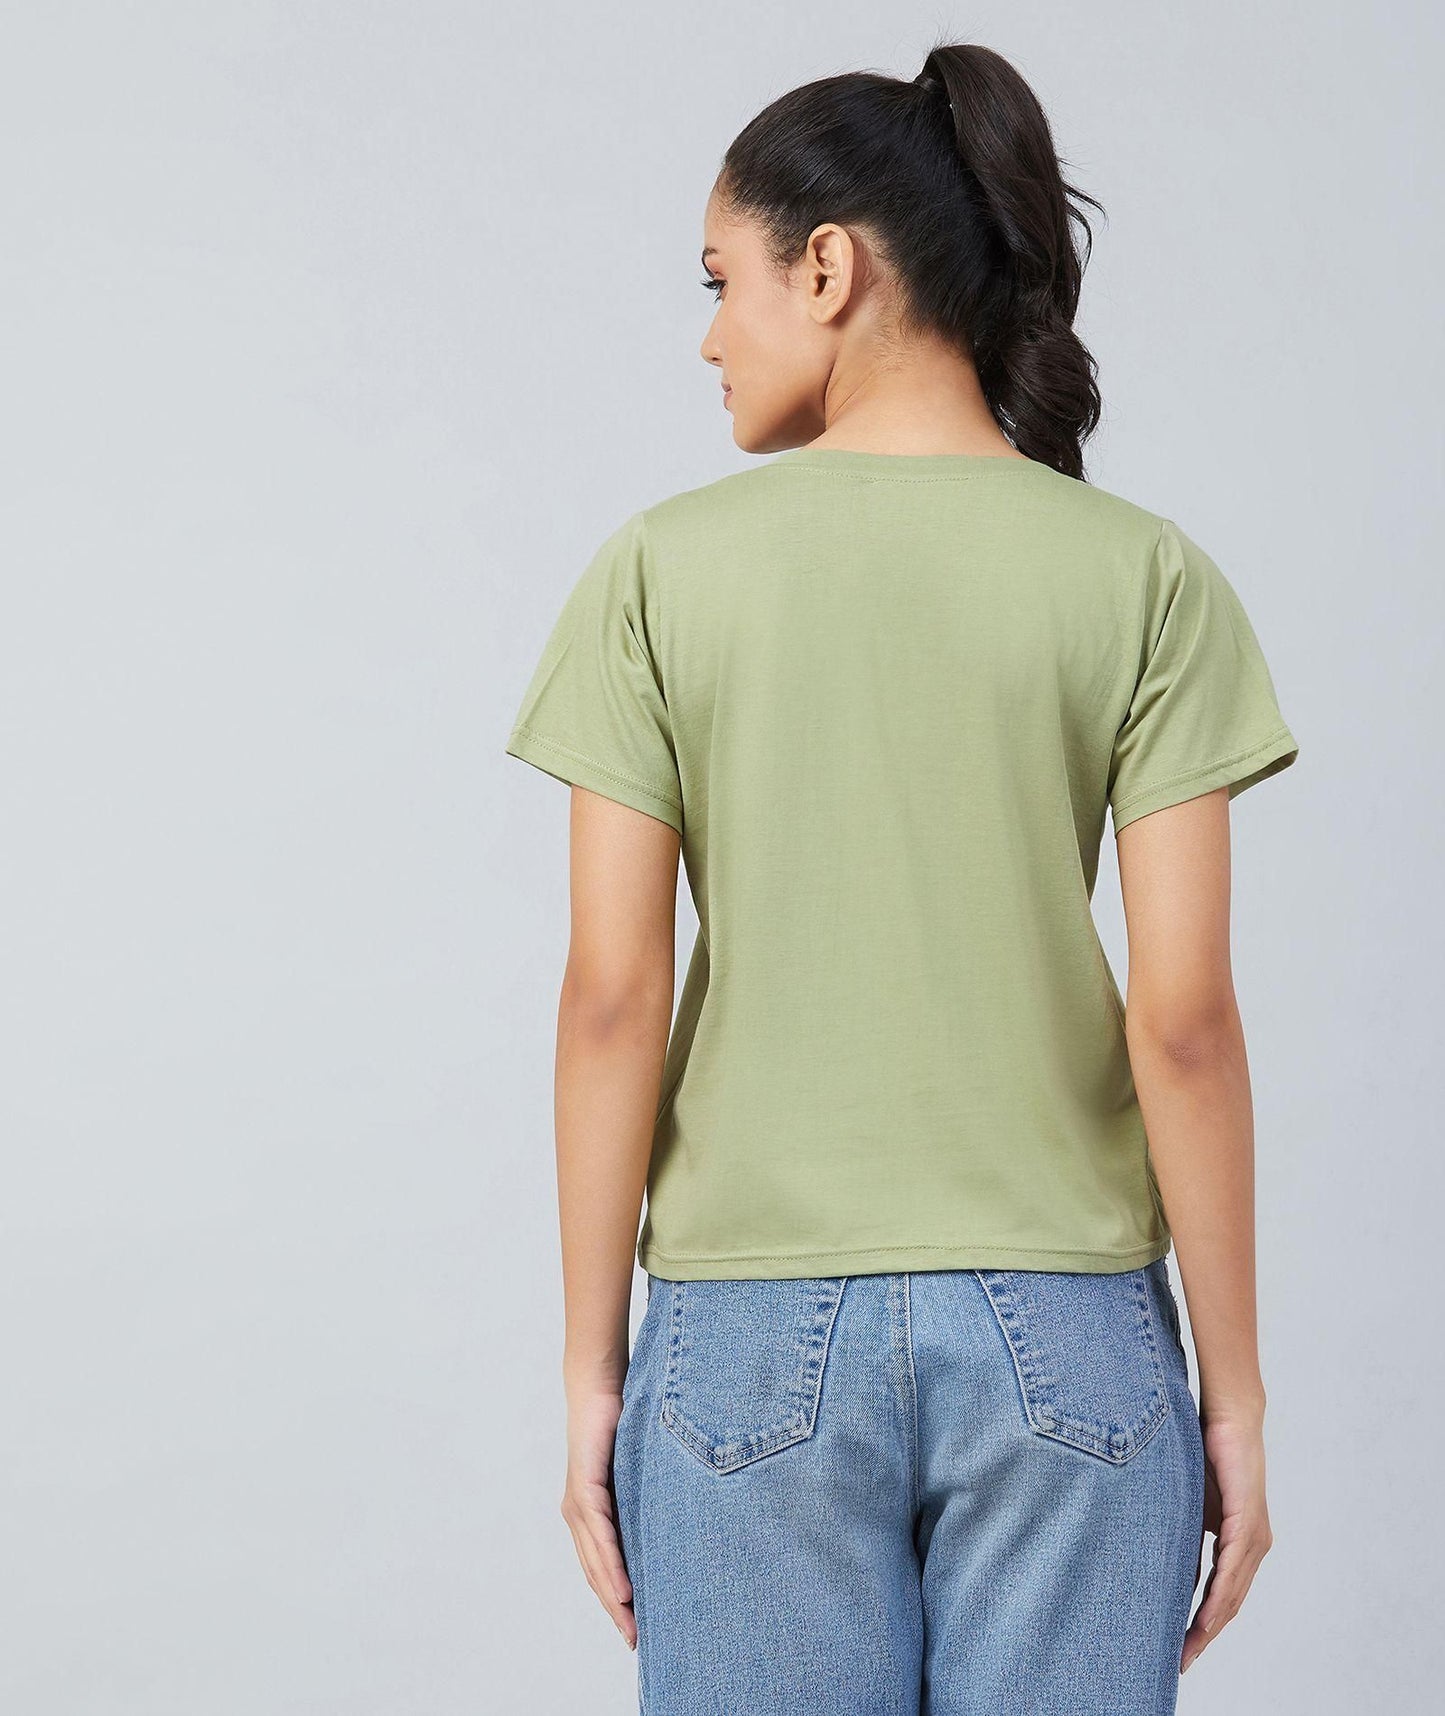 Women's Round Neck Regular Length T-shirt